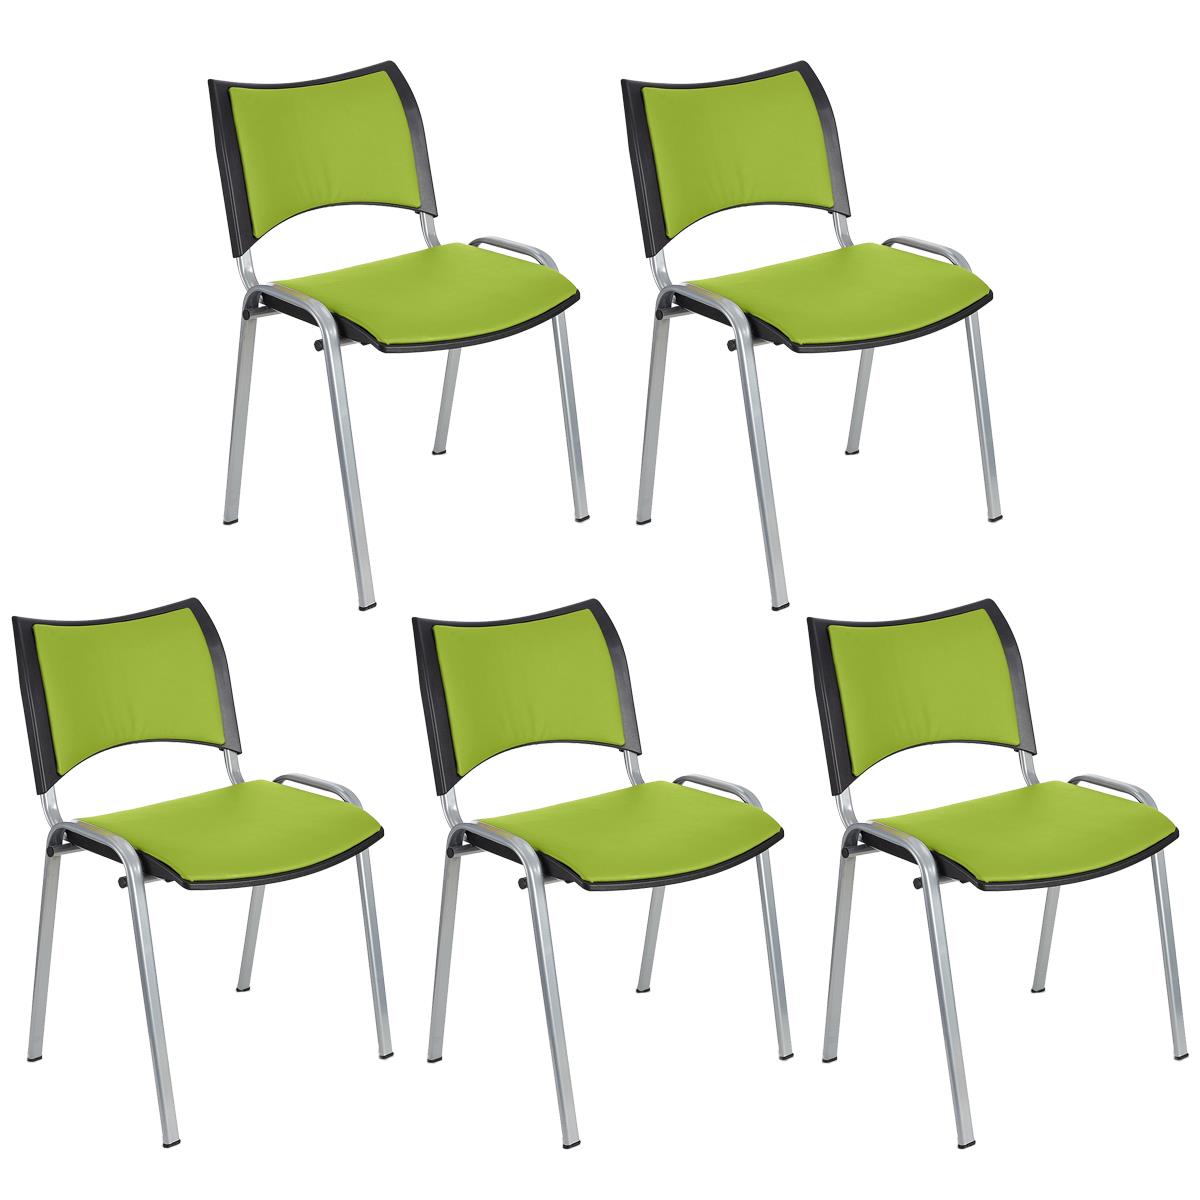 Lote 5 Cadeiras de Visita ROMEL PELE, Prática e Empilhável, Pernas Cinza, Verde